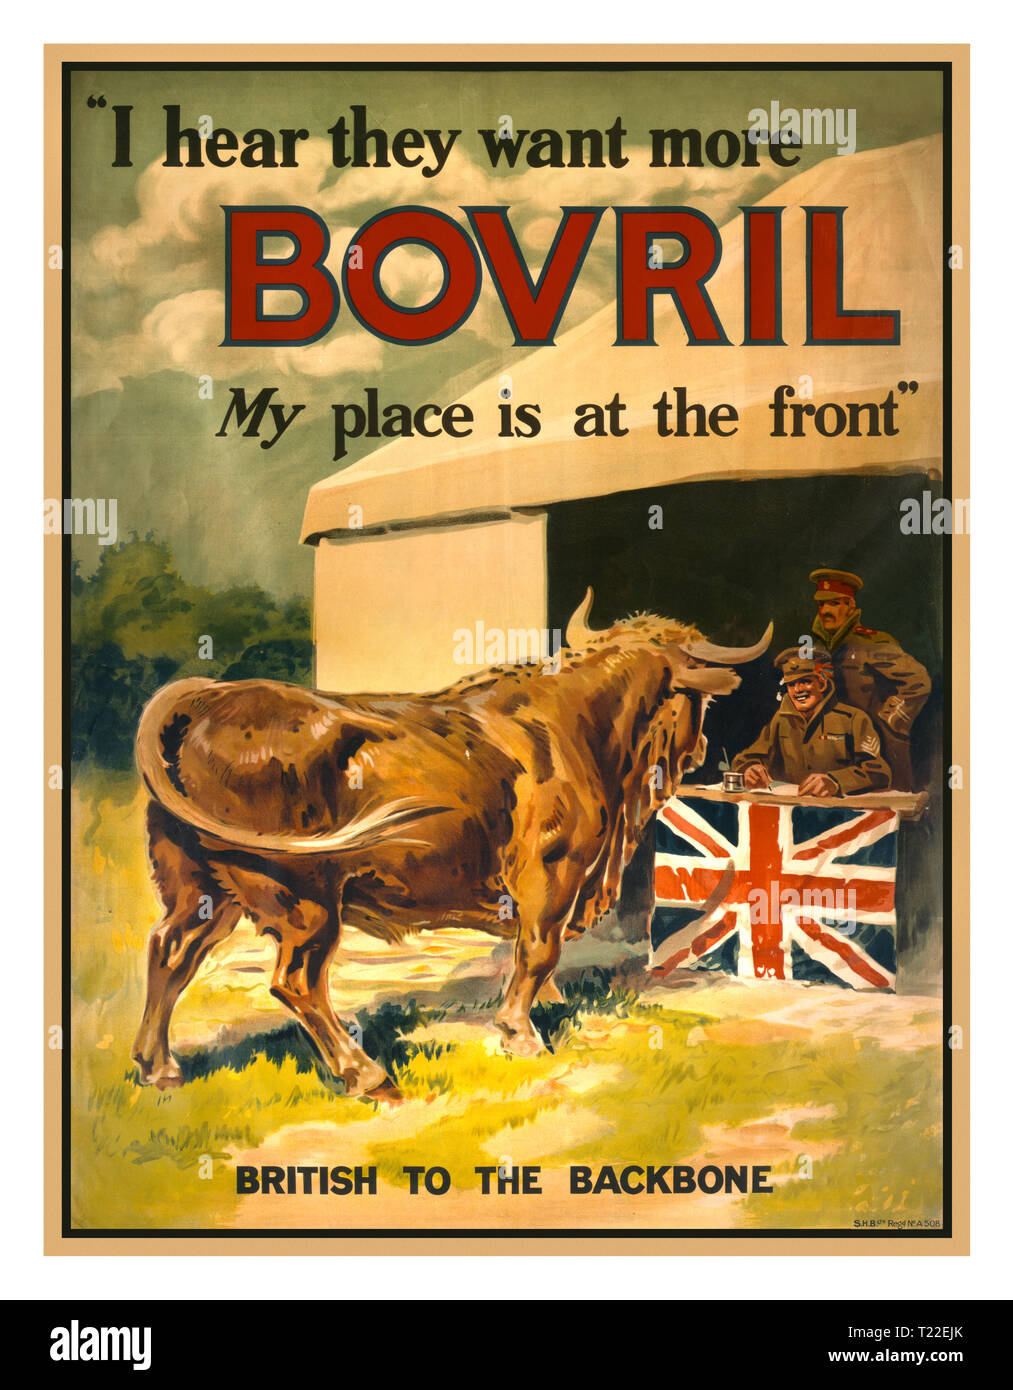 WW1 British Affiches de propagande de Recrutement 1915 'J'entends qu'ils veulent plus. Bovril Ma place est à l'avant' Vintage Affiche de propagande montrant une approche d'un taureau de recrutement décoré avec le drapeau britannique. Est un nom de marque Bovril pour extrait de boeuf. Banque D'Images